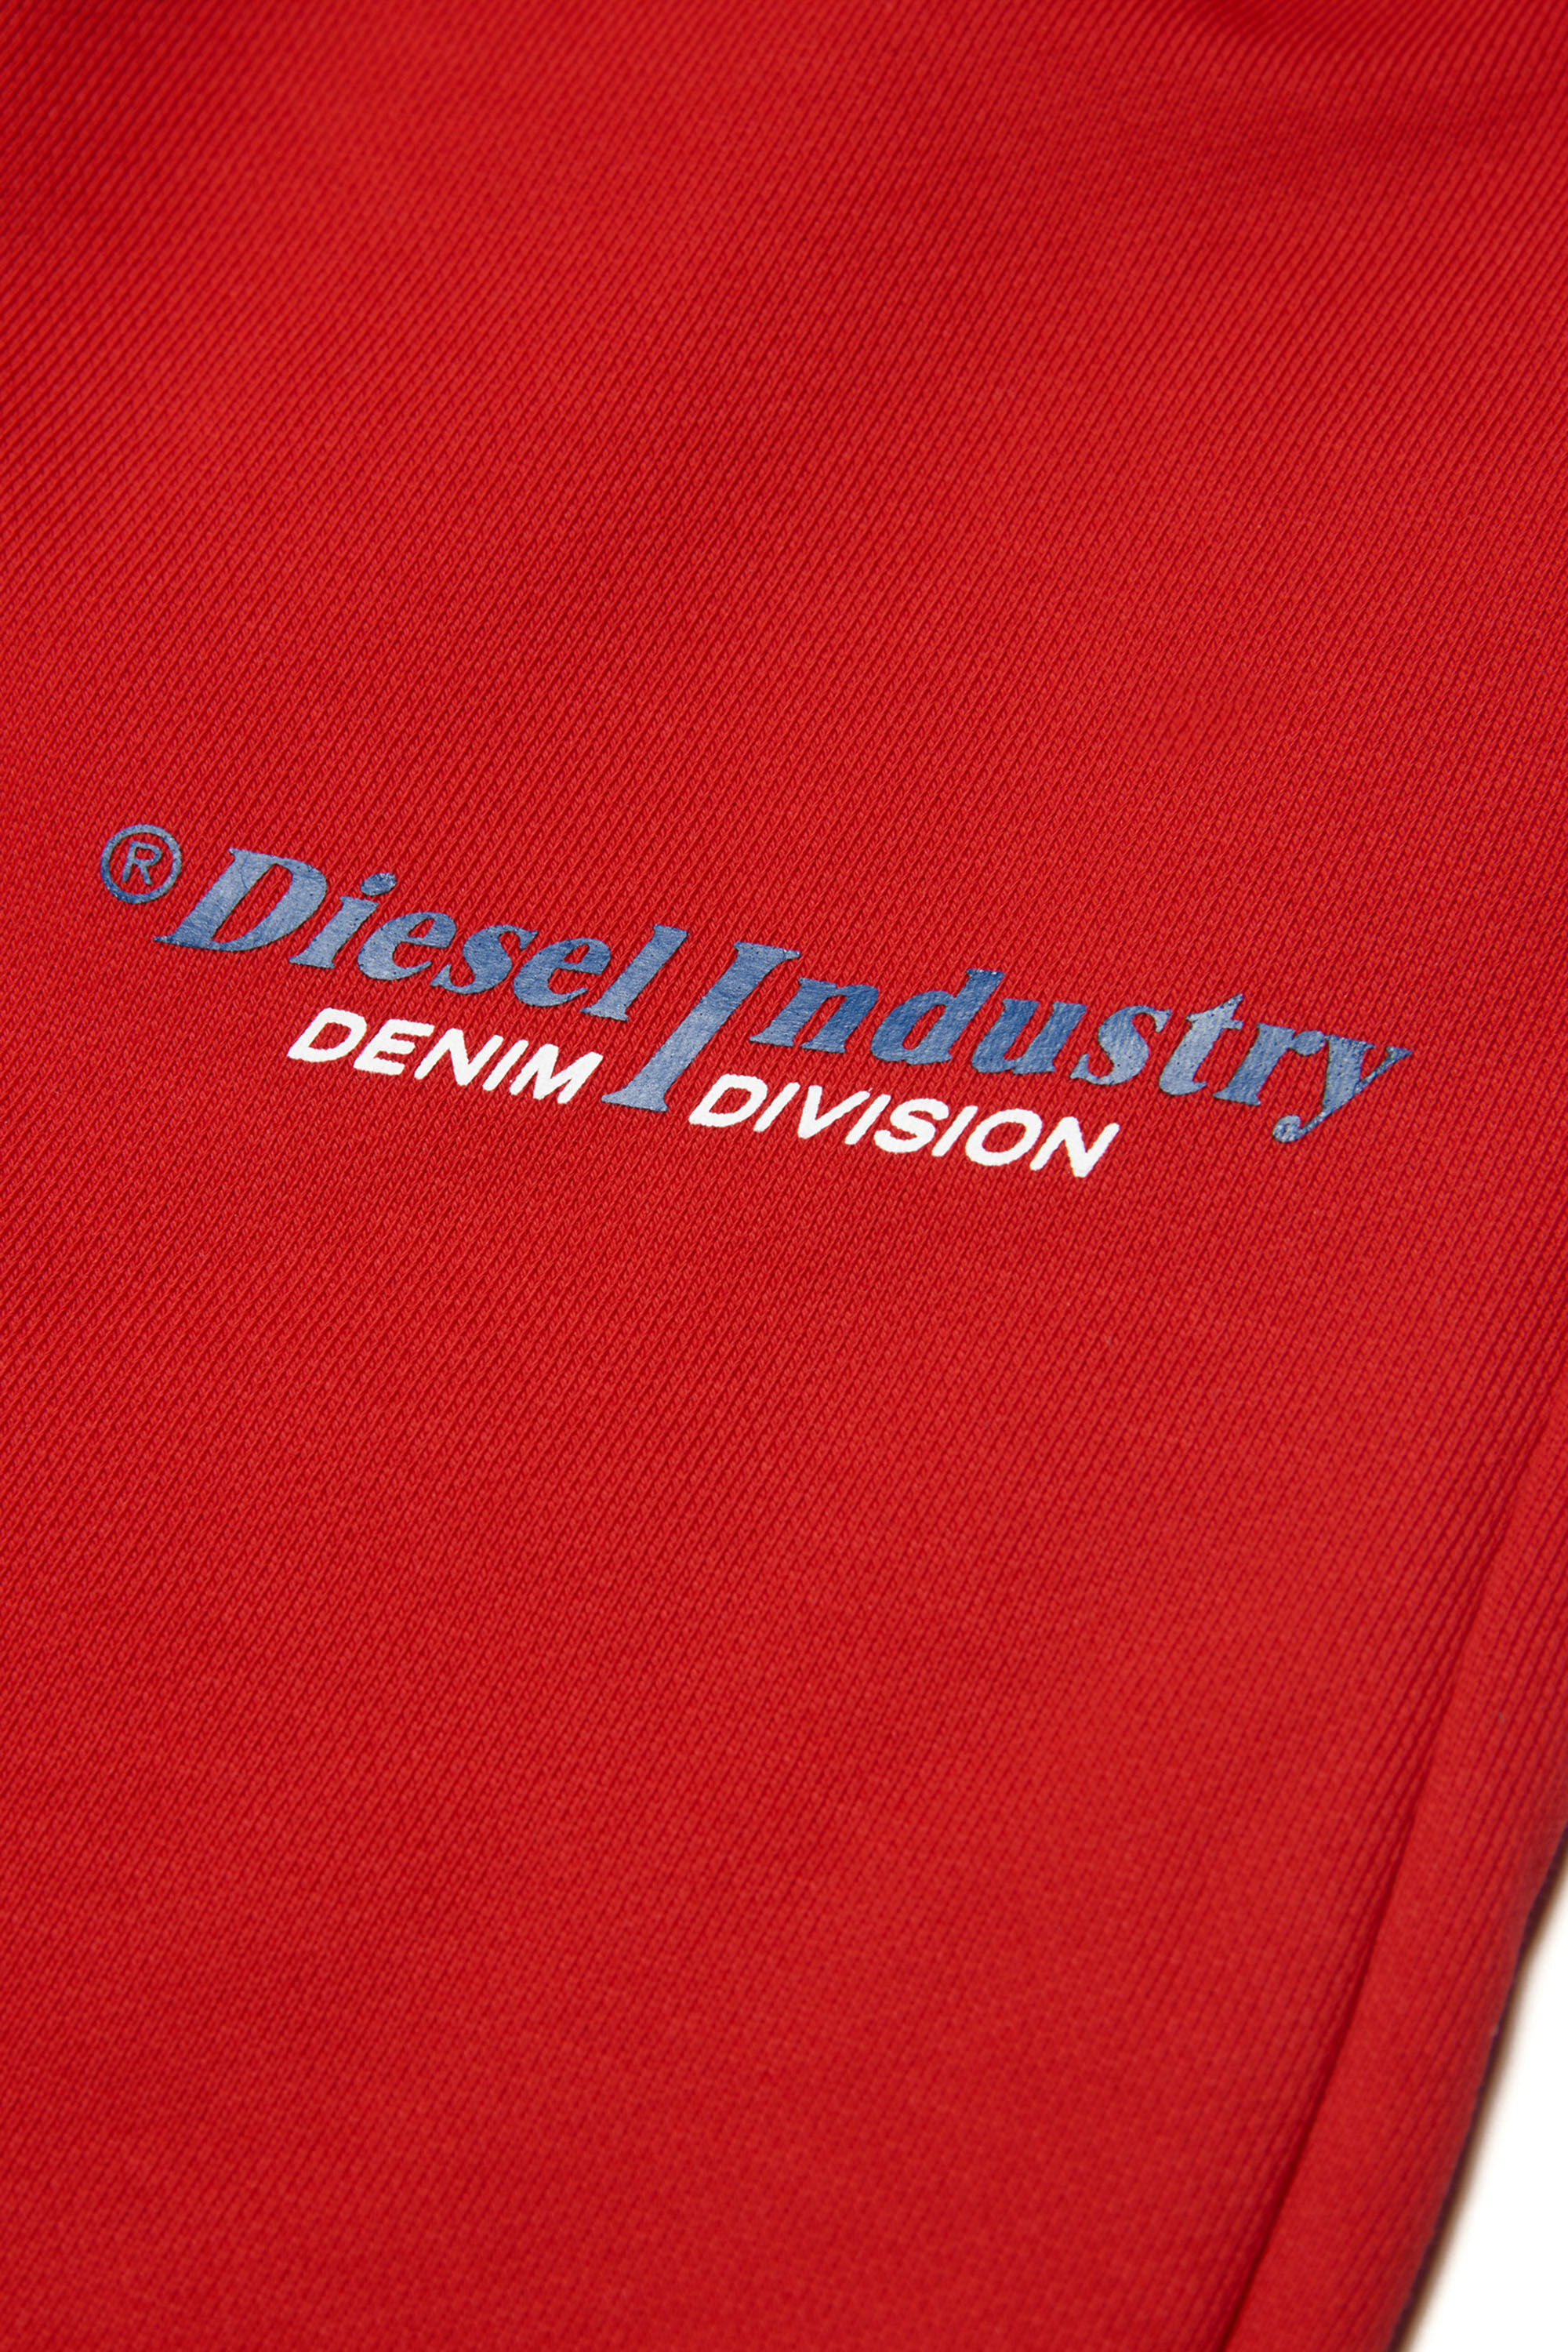 Diesel - PVENUSIND, Rouge - Image 3